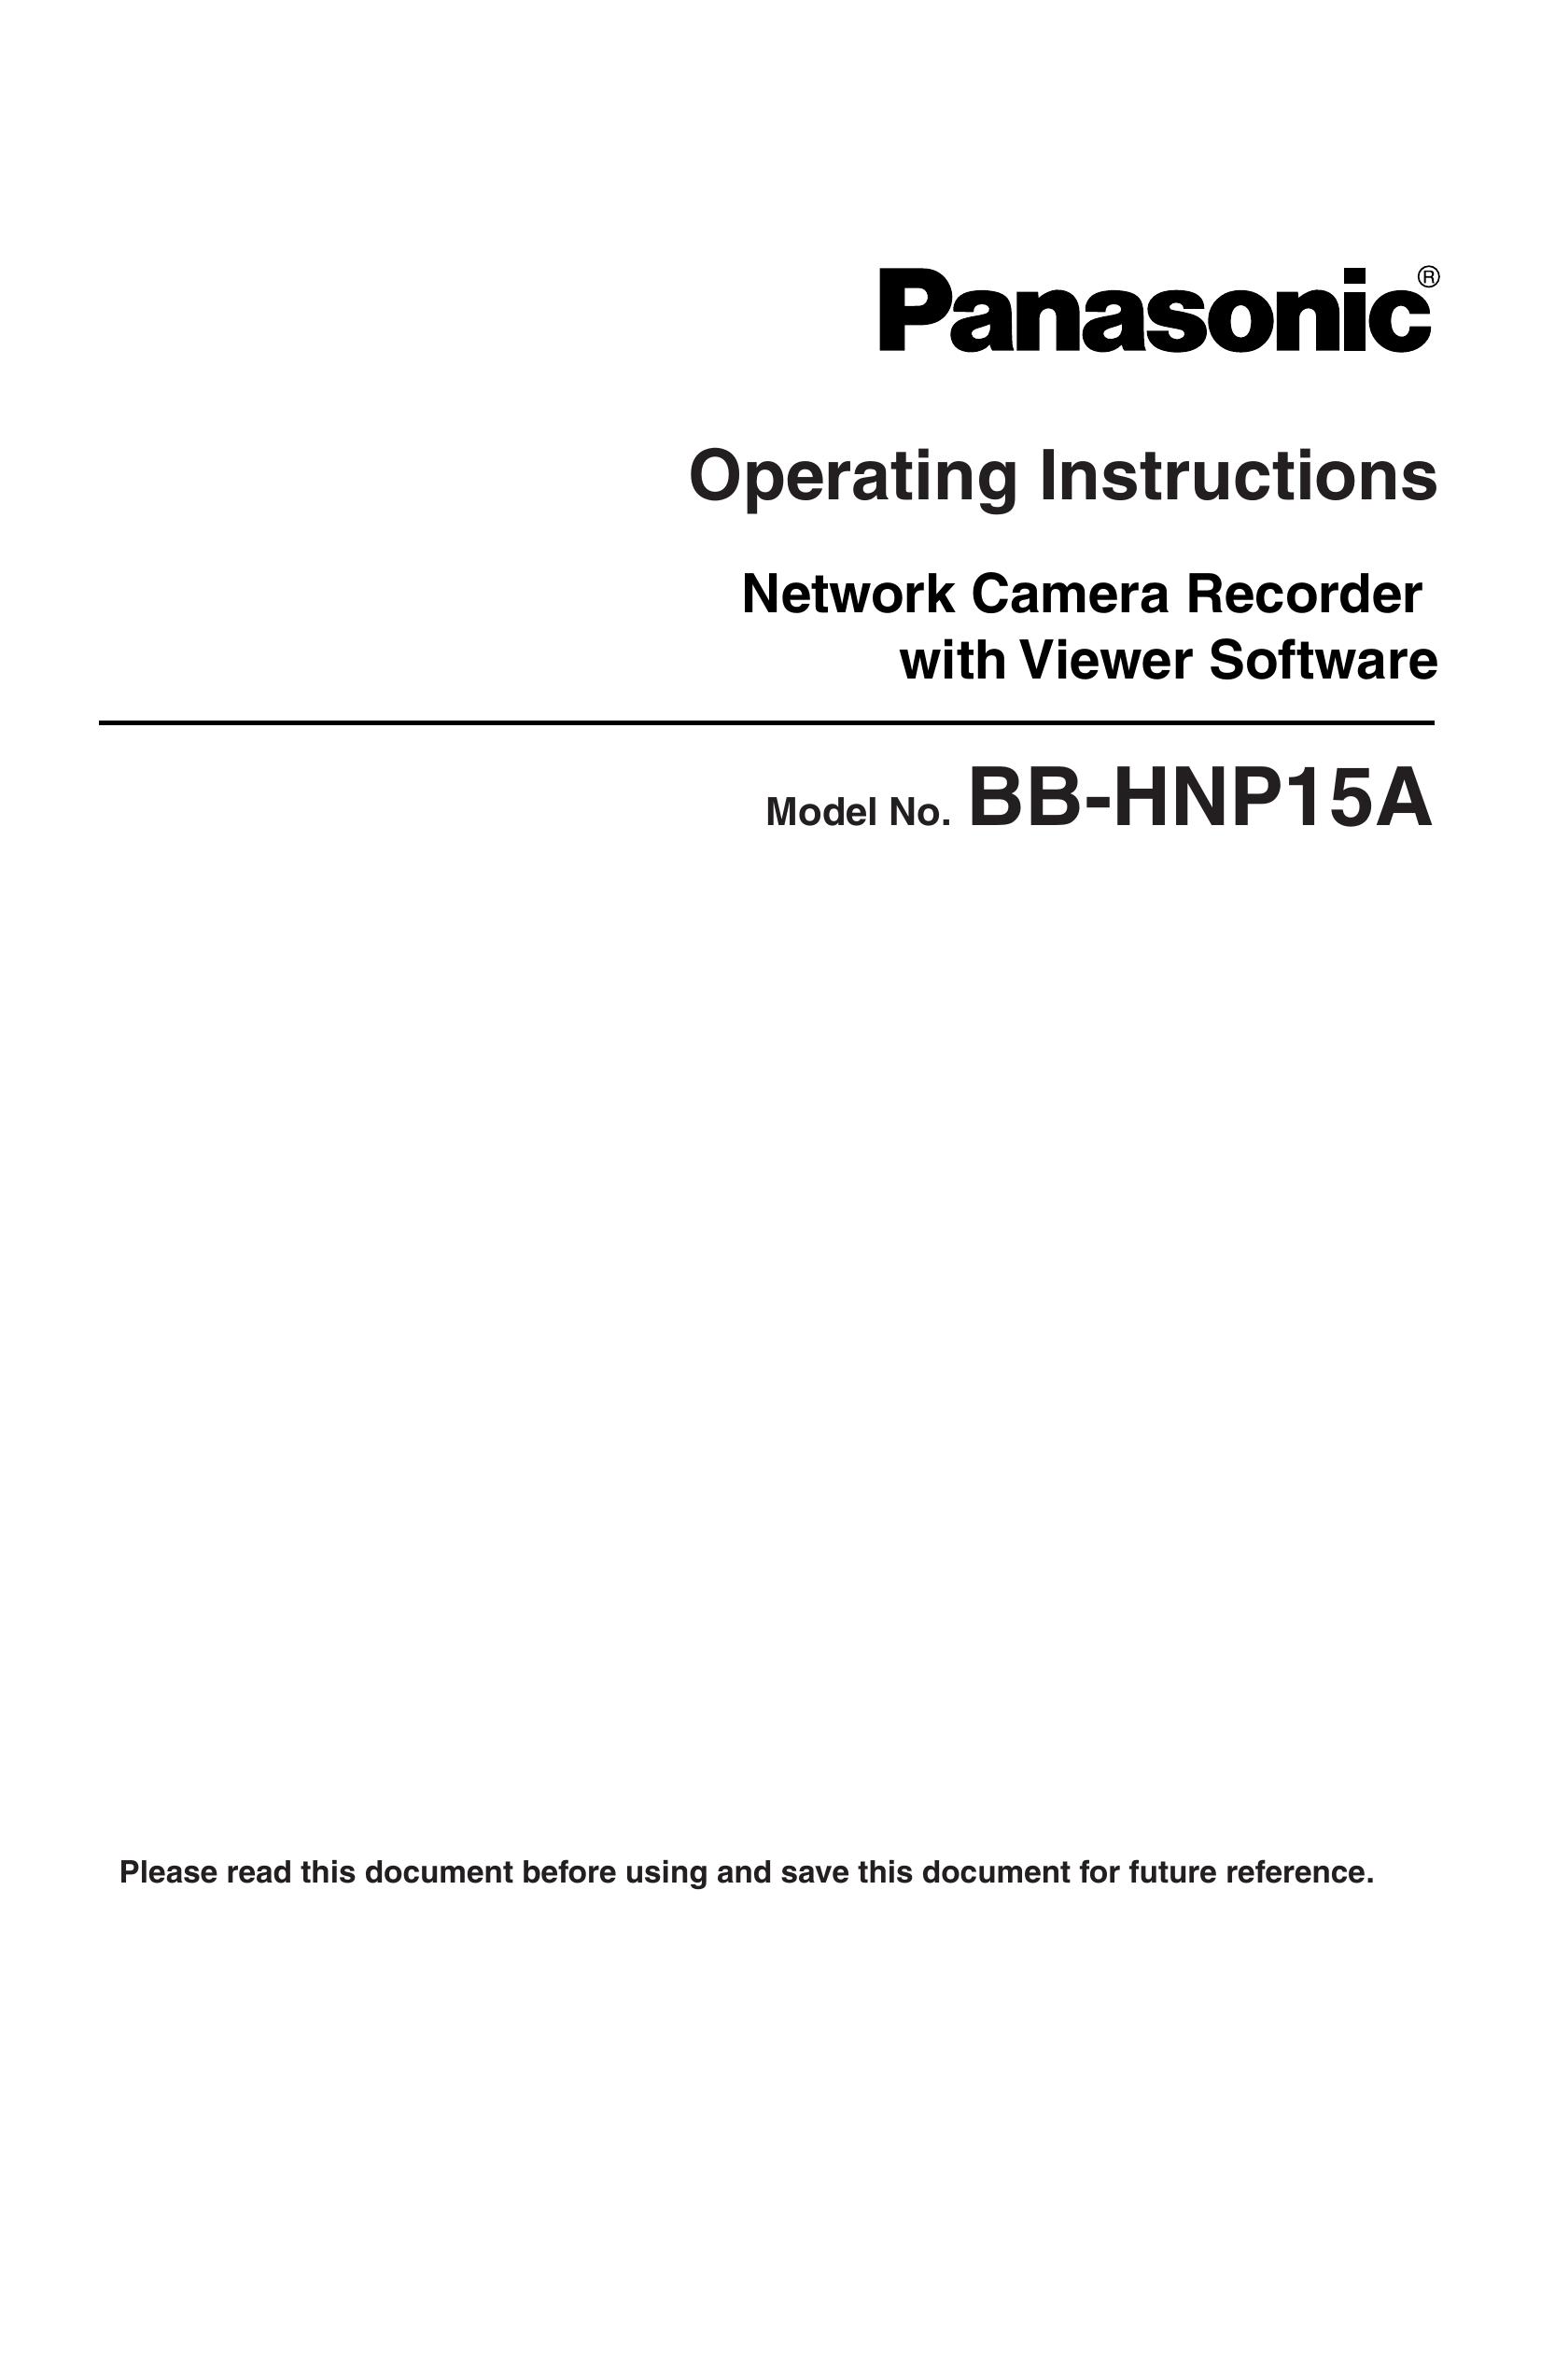 Panasonic BB-HNP15A Security Camera User Manual